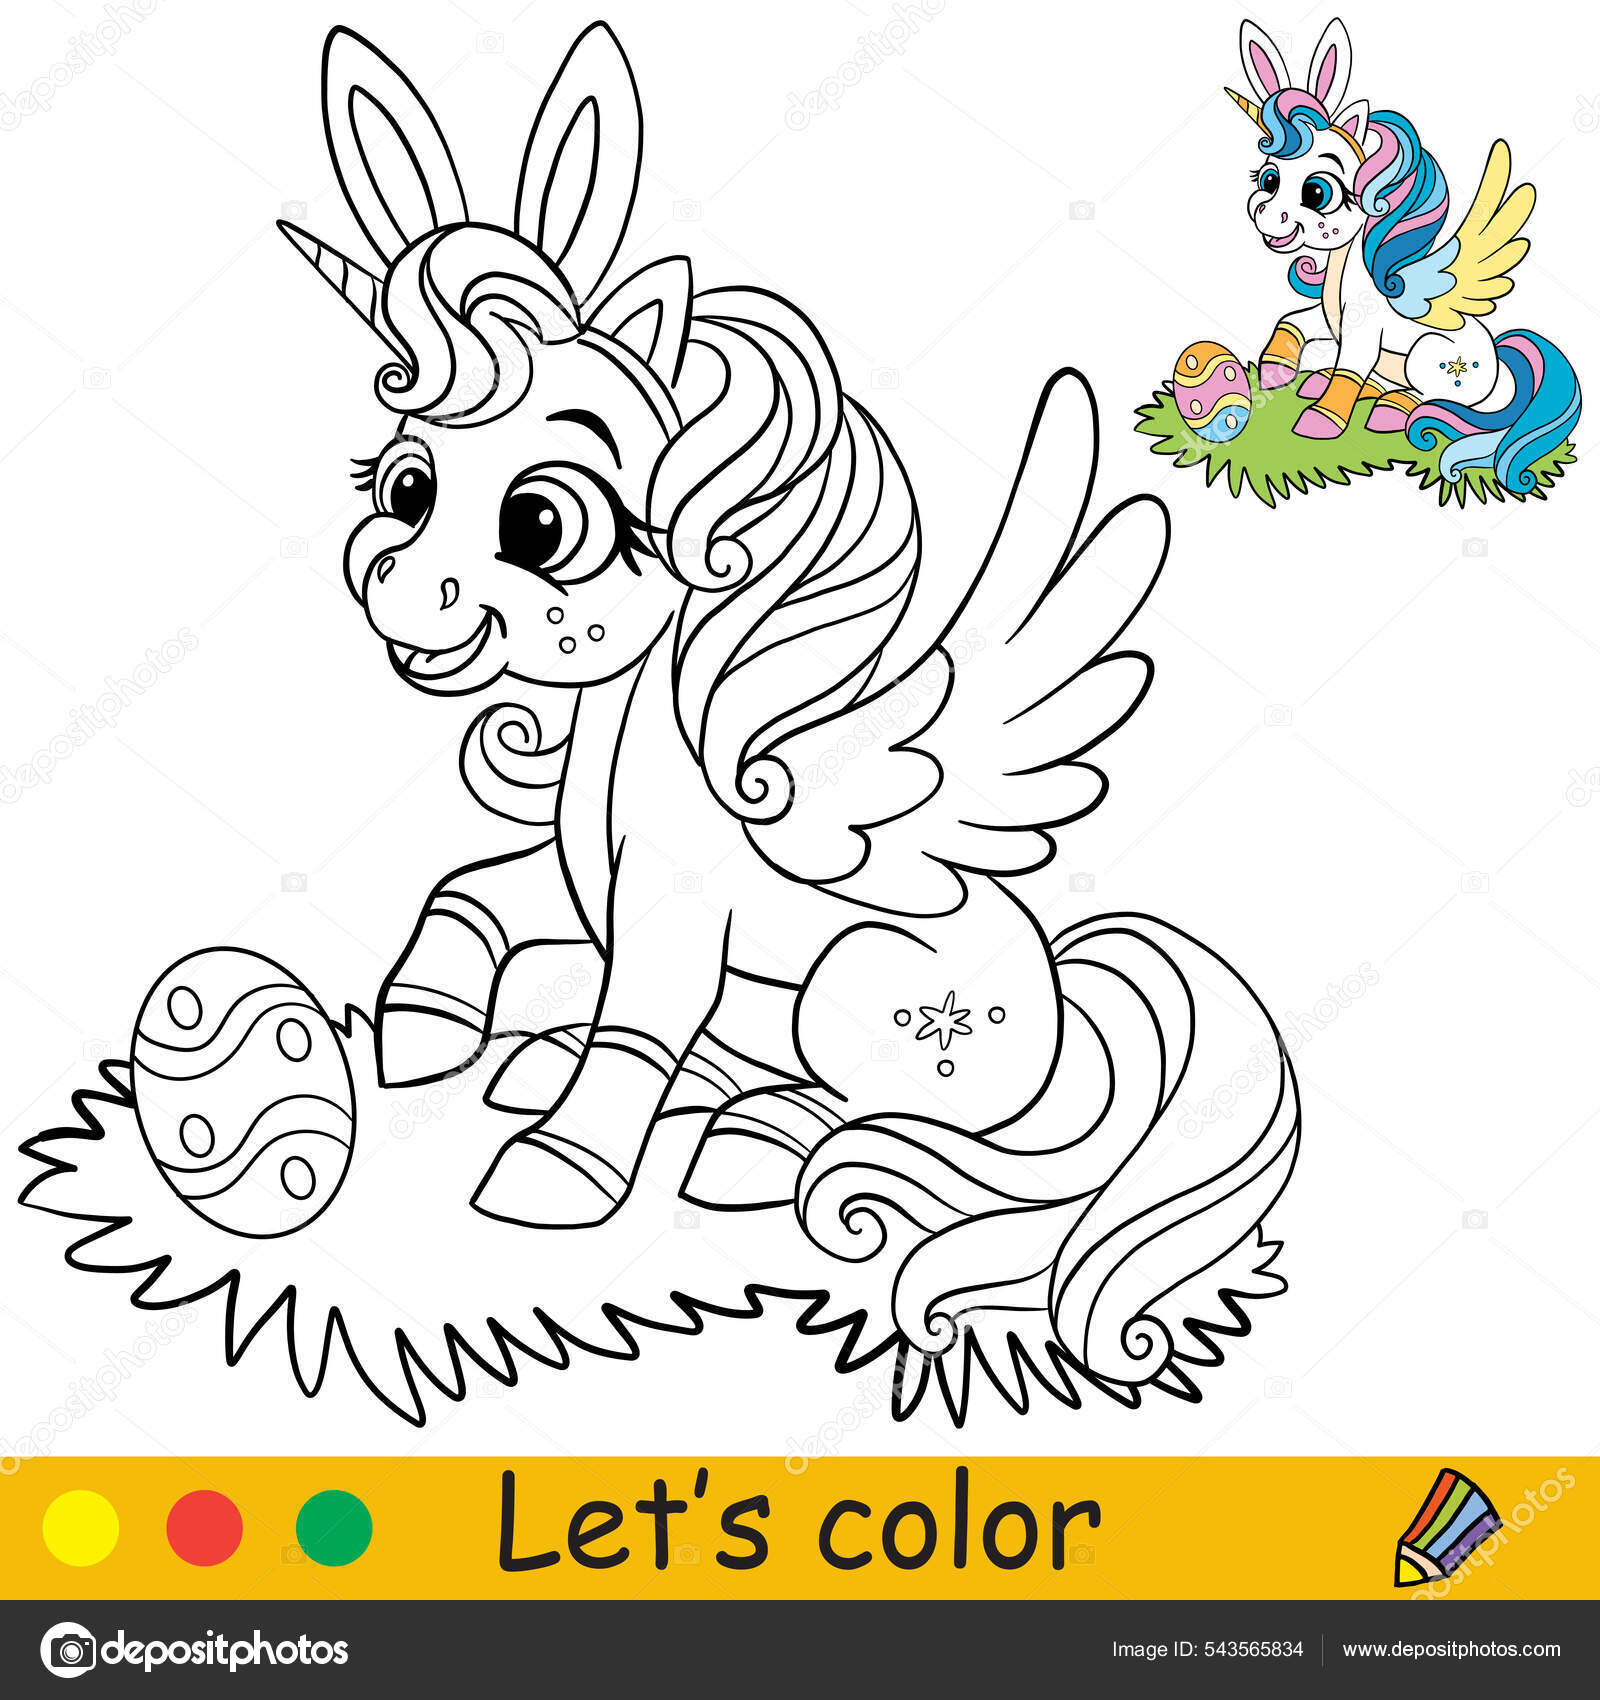 Desenho de Unicórnio com asas para Colorir - Colorir.com